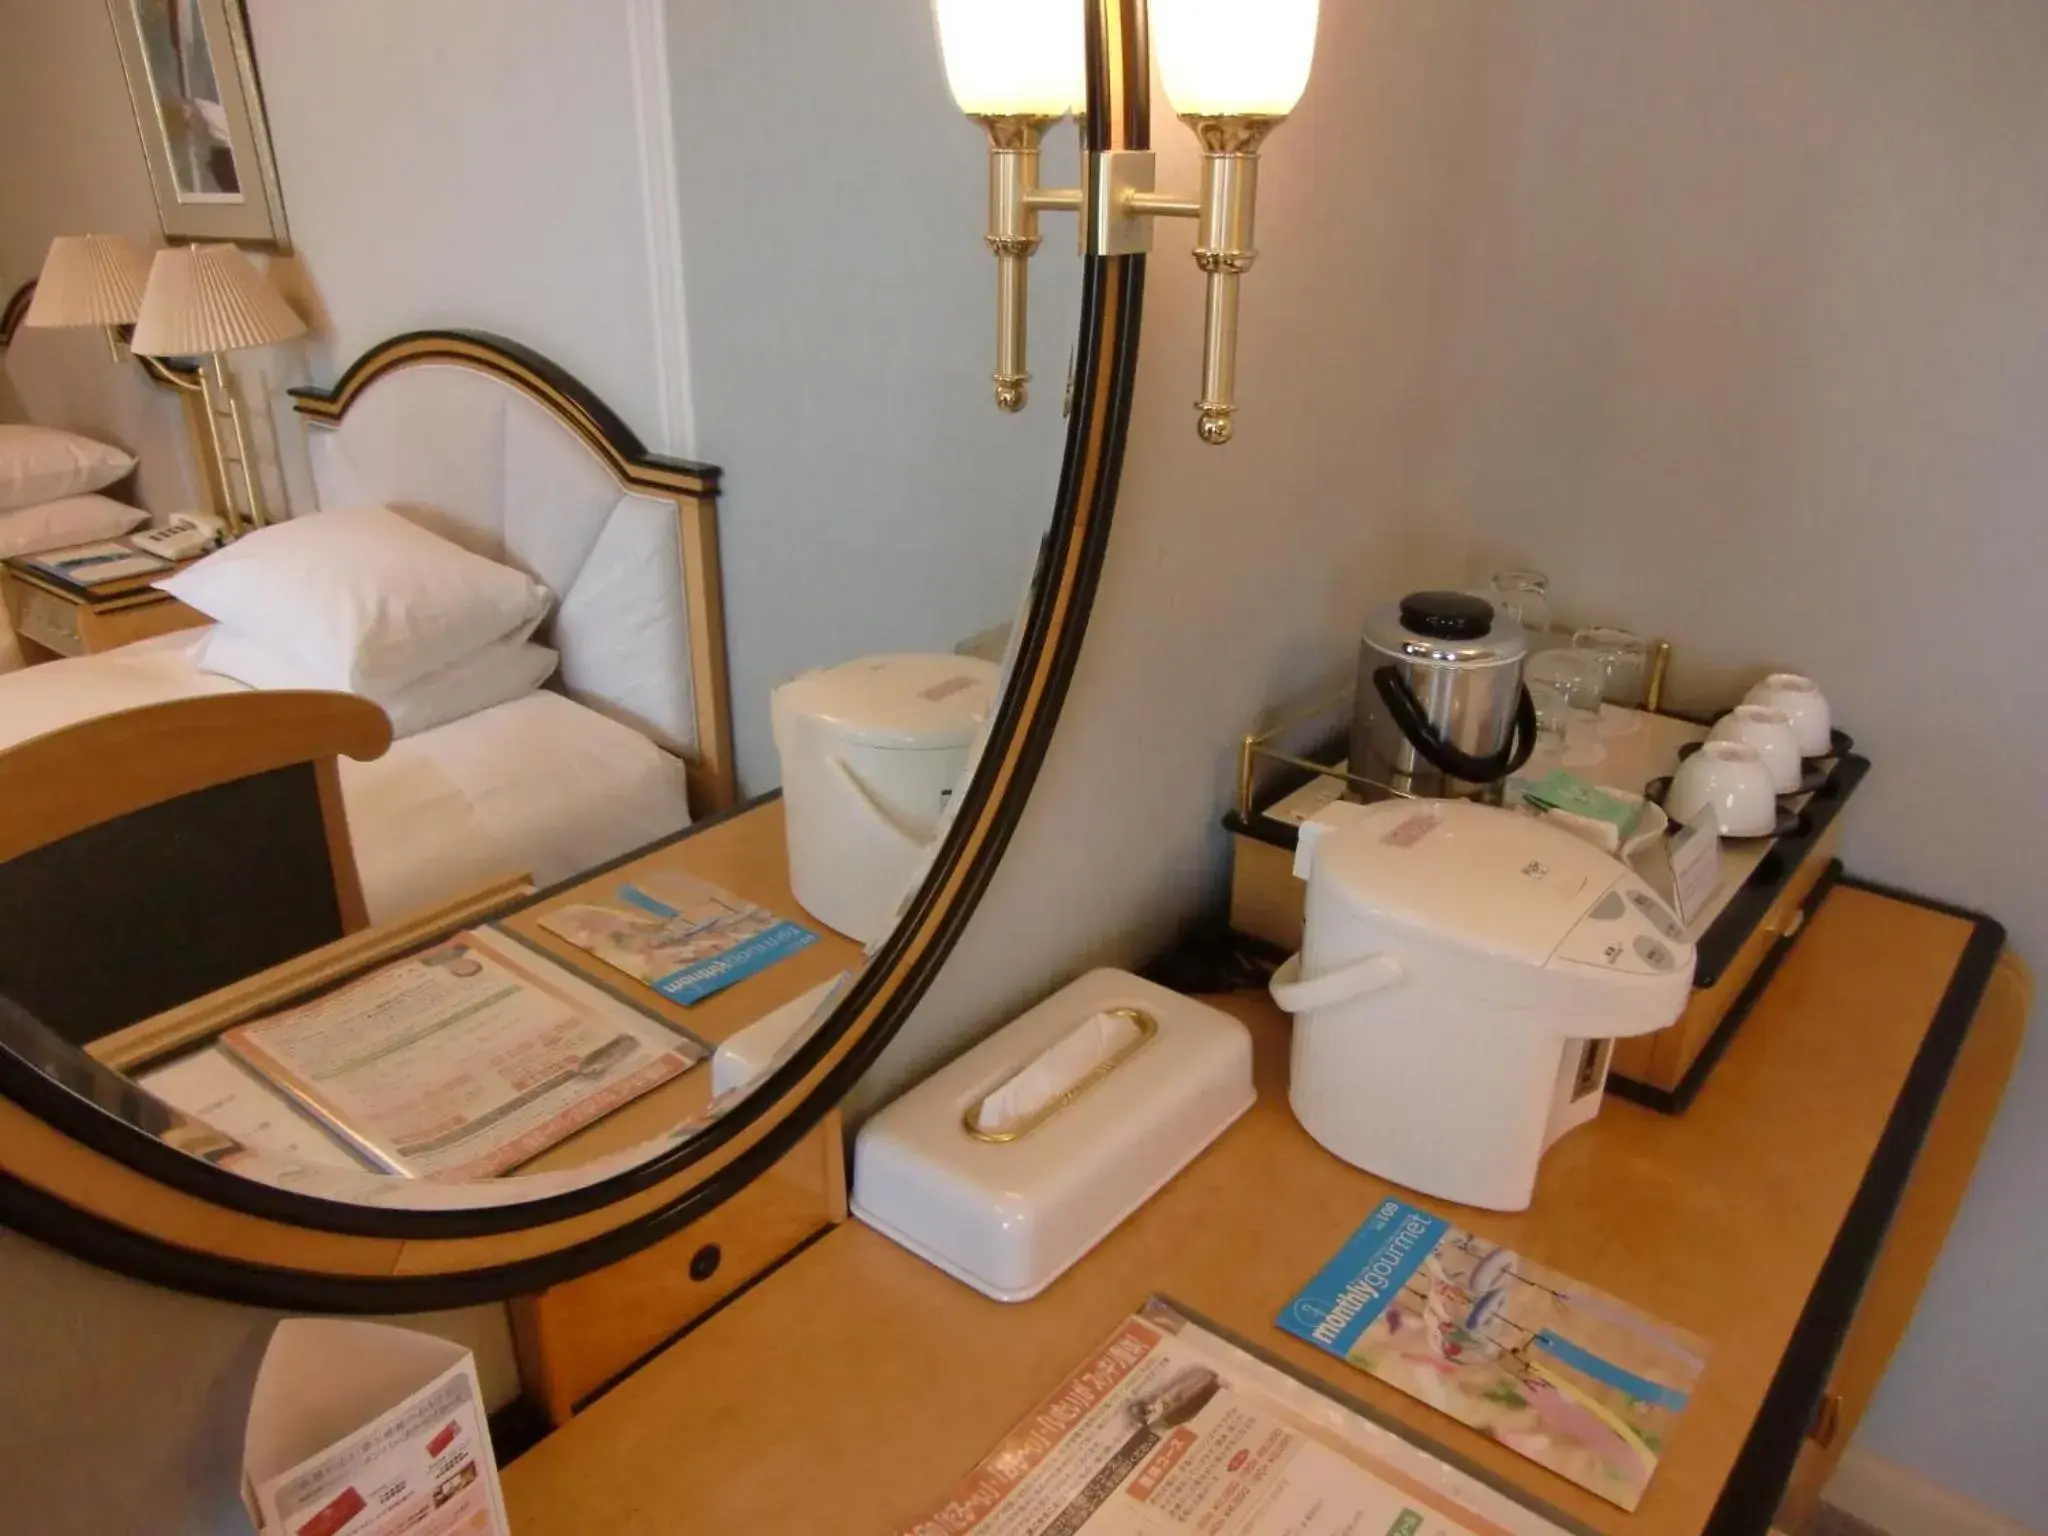 Coffee/tea facilities, Bathroom in Imabari Kokusai Hotel